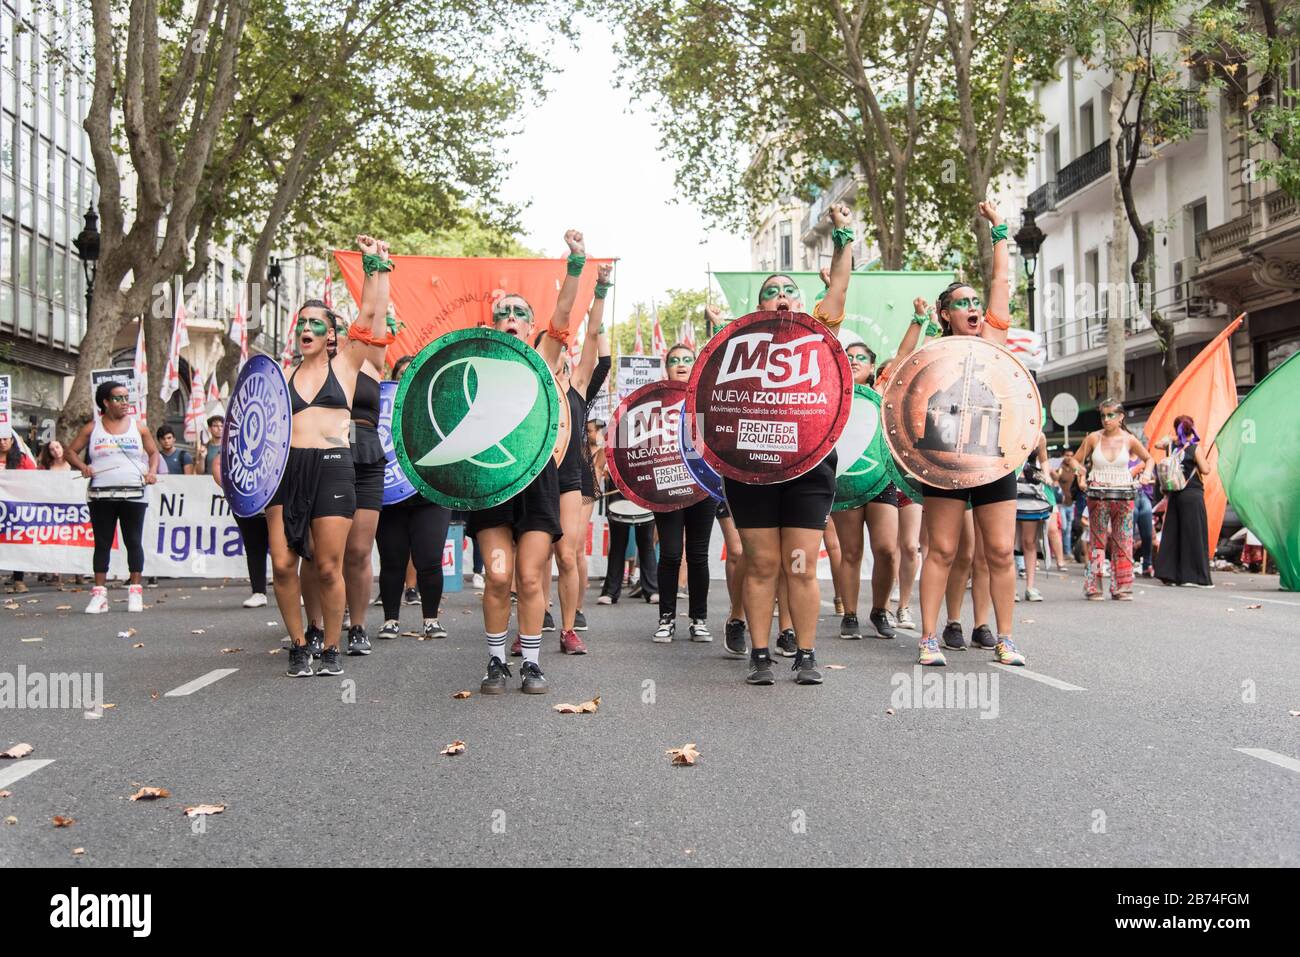 CABA, Buenos Aires/Argentinien; 9. März 2020: Internationaler Frauentag. Feministischer Streik. Junge Frauen verteidigen das Gesetz des legalen, sicheren und freien Abbruchs Stockfoto